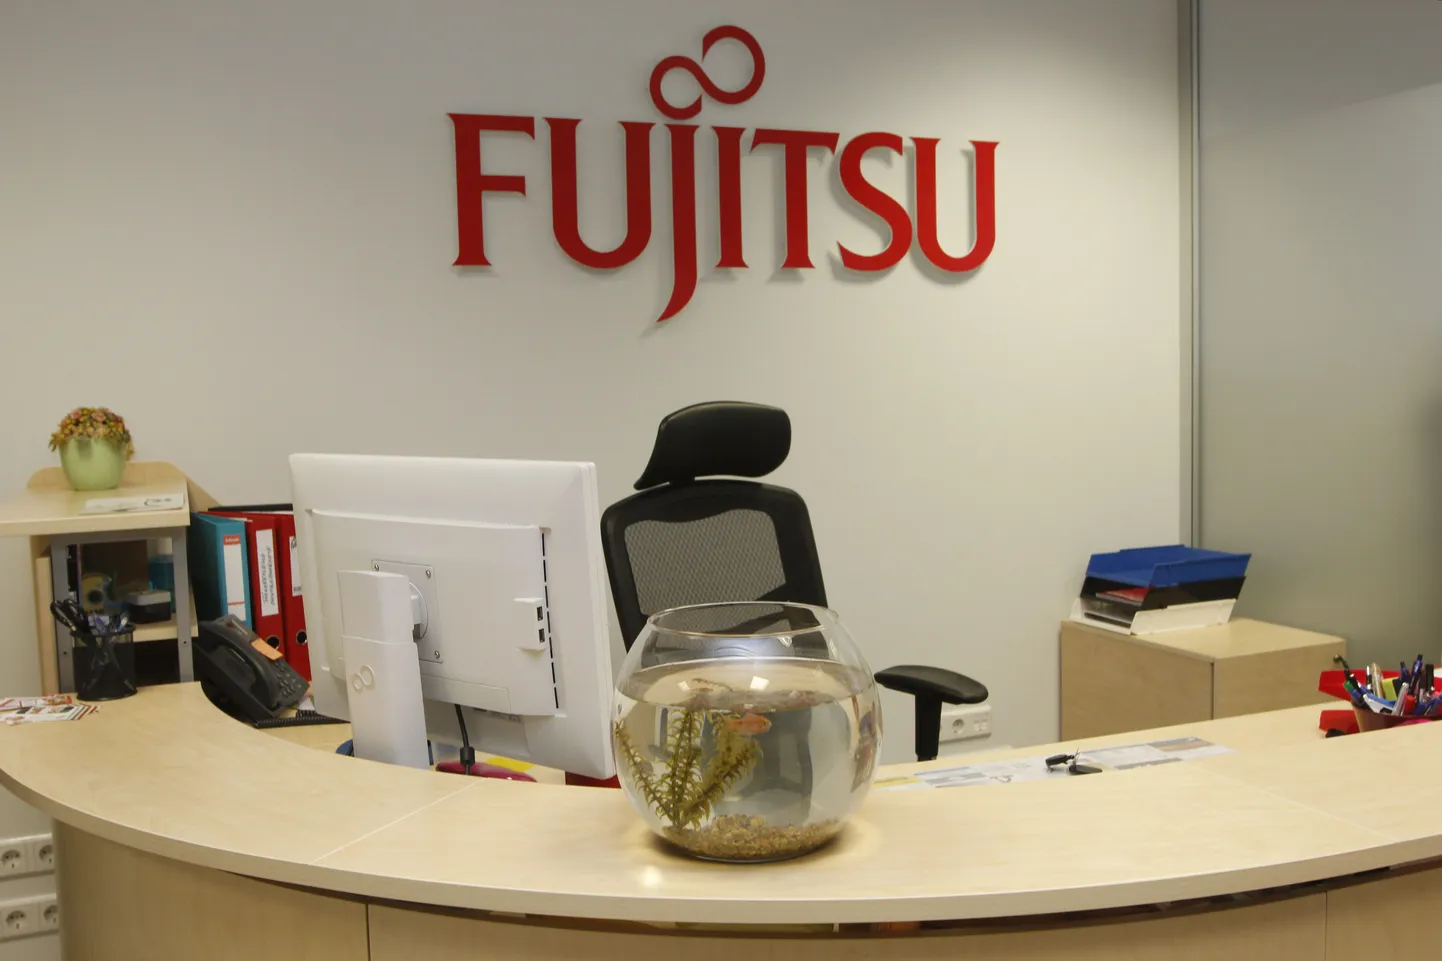 Fujitsu Estonia avab Pärnus Martensi majas IT kasutajatoe osakonna, kus esmalt saab tööd kümme kohalikku soome keele oskajat, kes soovivad arendada enda IT-oskusi.